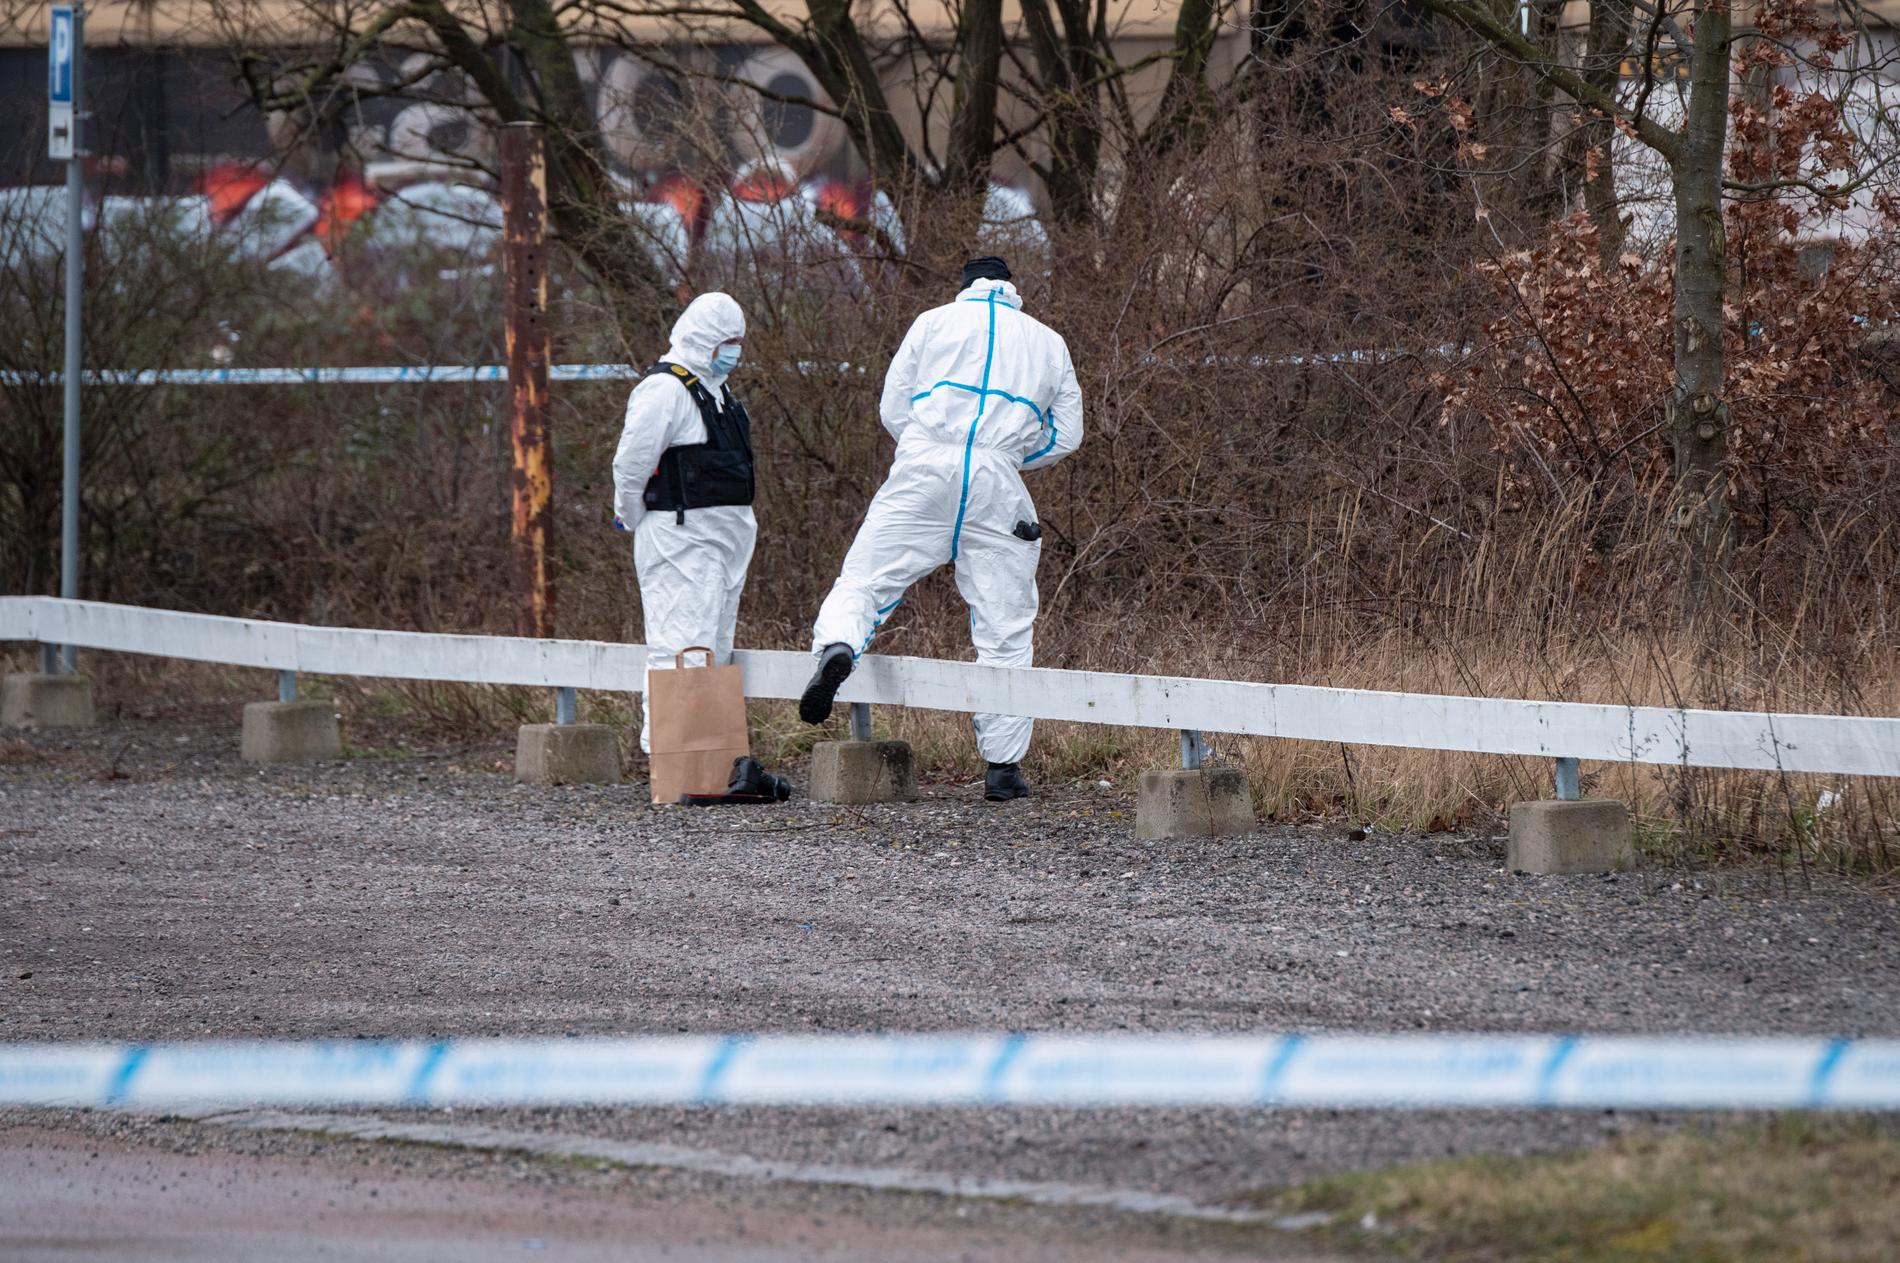 En död person har hittats i en bil i hamnområdet i Landskrona. Polisens tekniker undersöker området i närheten.